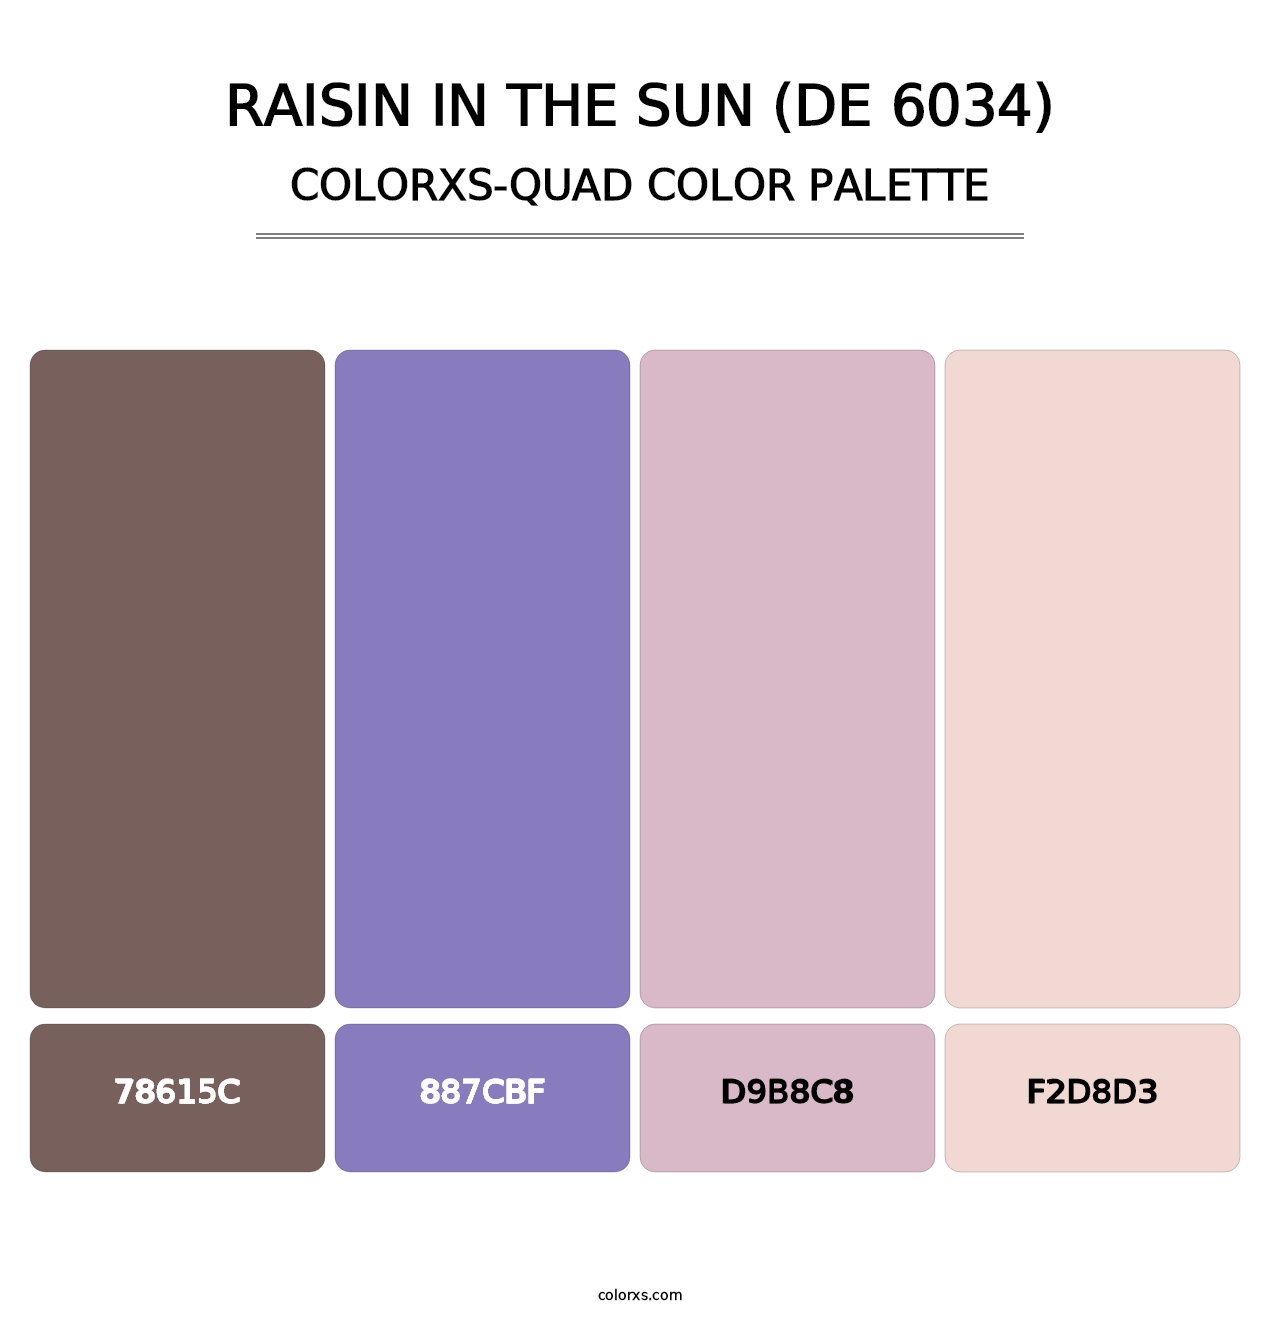 Raisin in the Sun (DE 6034) - Colorxs Quad Palette